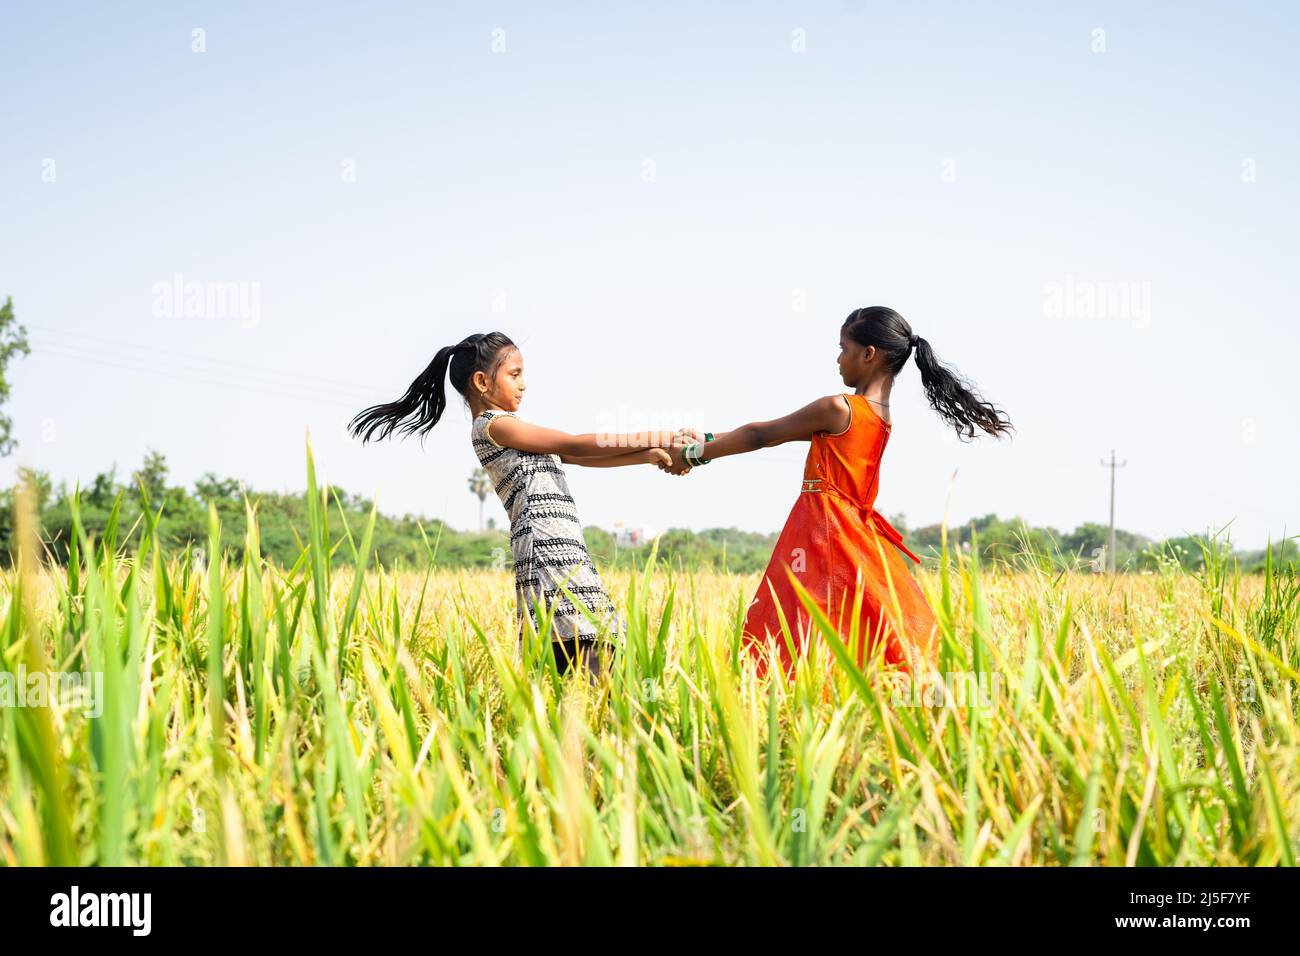 giovani ragazzi adolescenti che giocano in mezzo al campo di risaie durante la stagione del raccolto - concetto di felicità, infanzia giocosa e stile di vita del villaggio Foto Stock